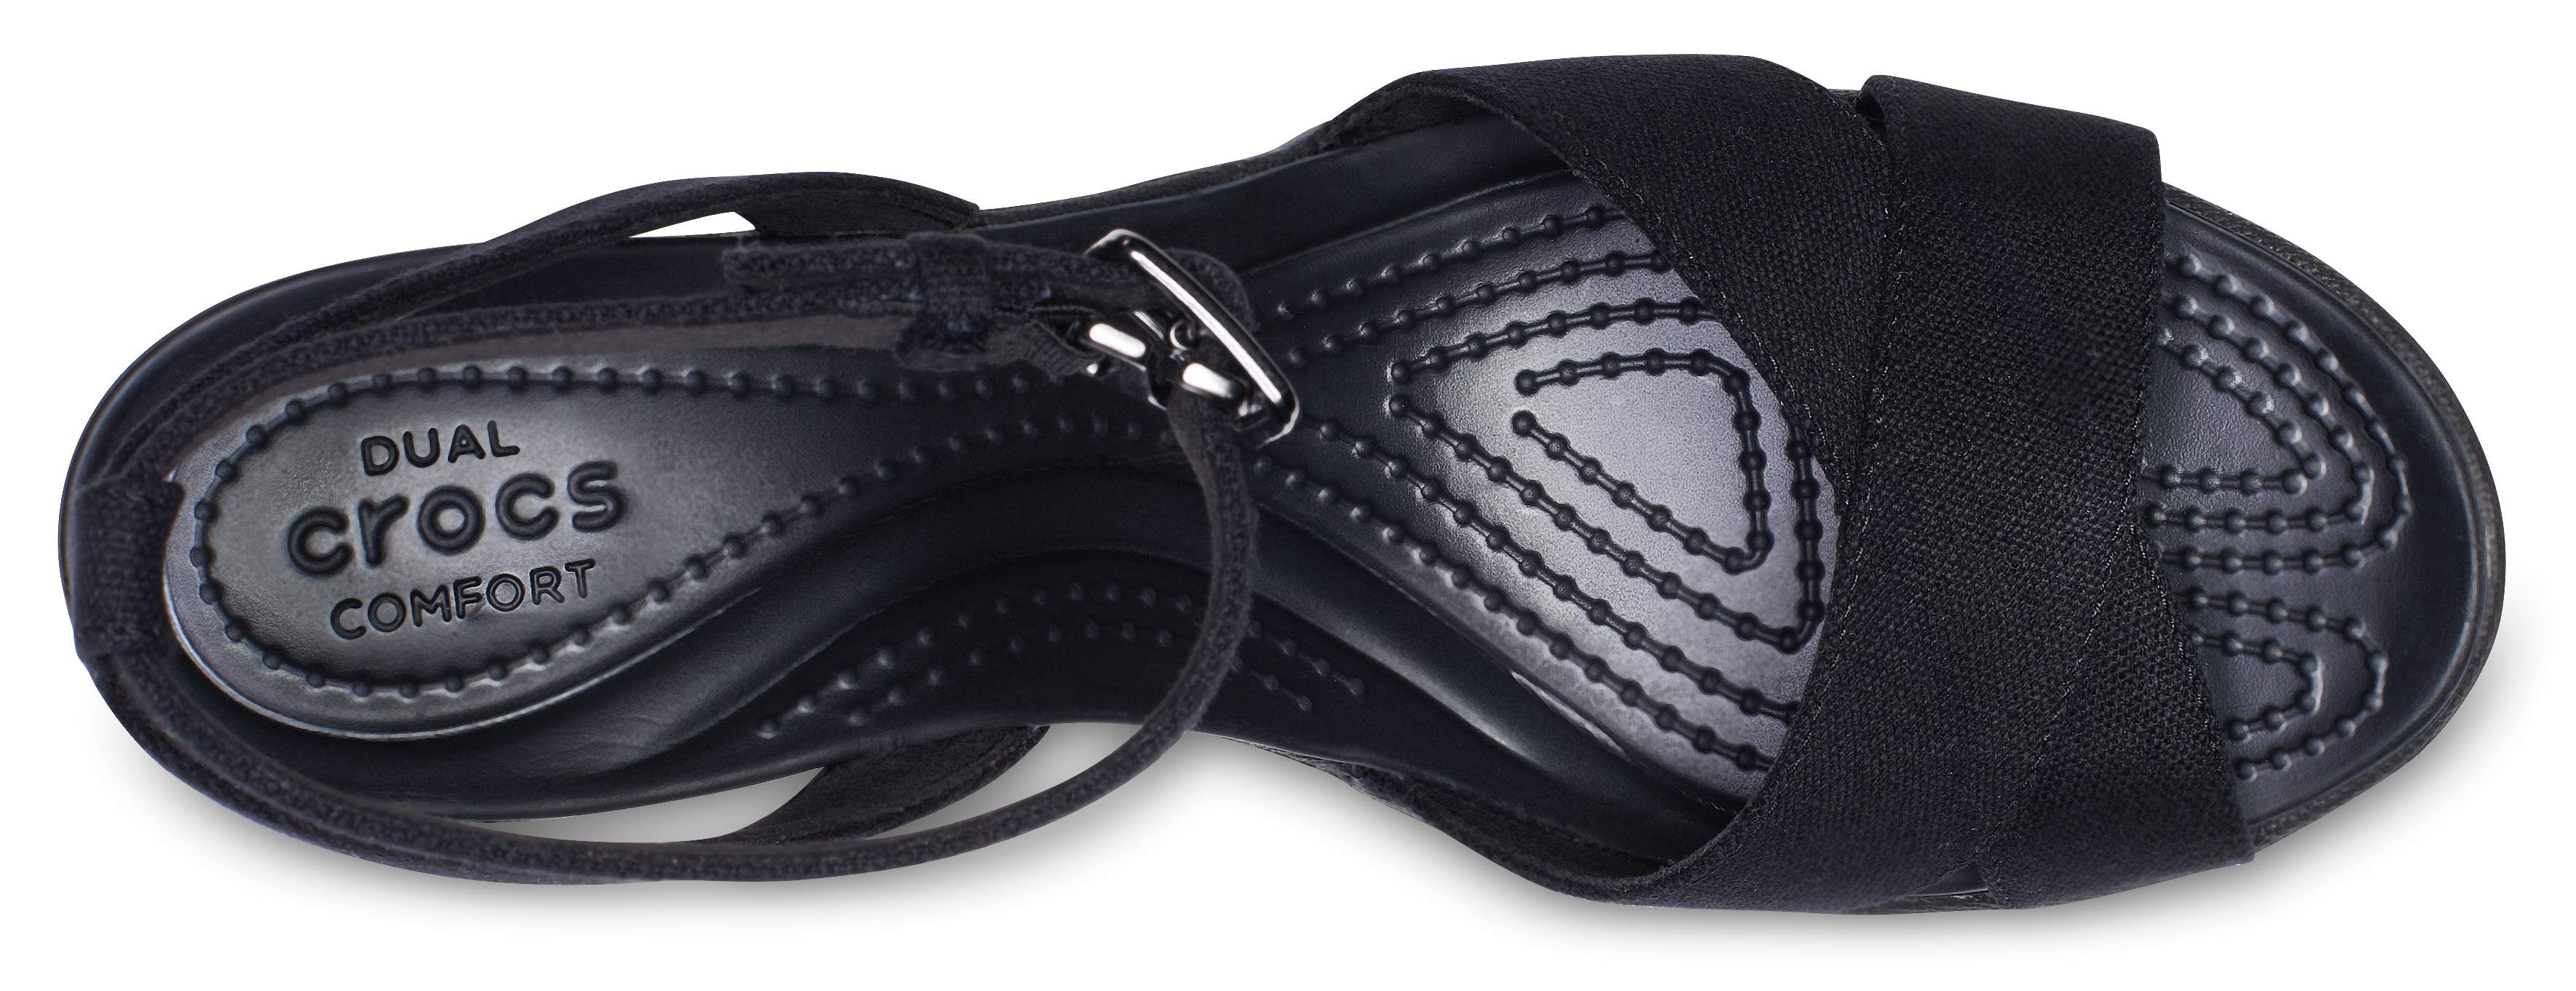 crocs leigh sandals